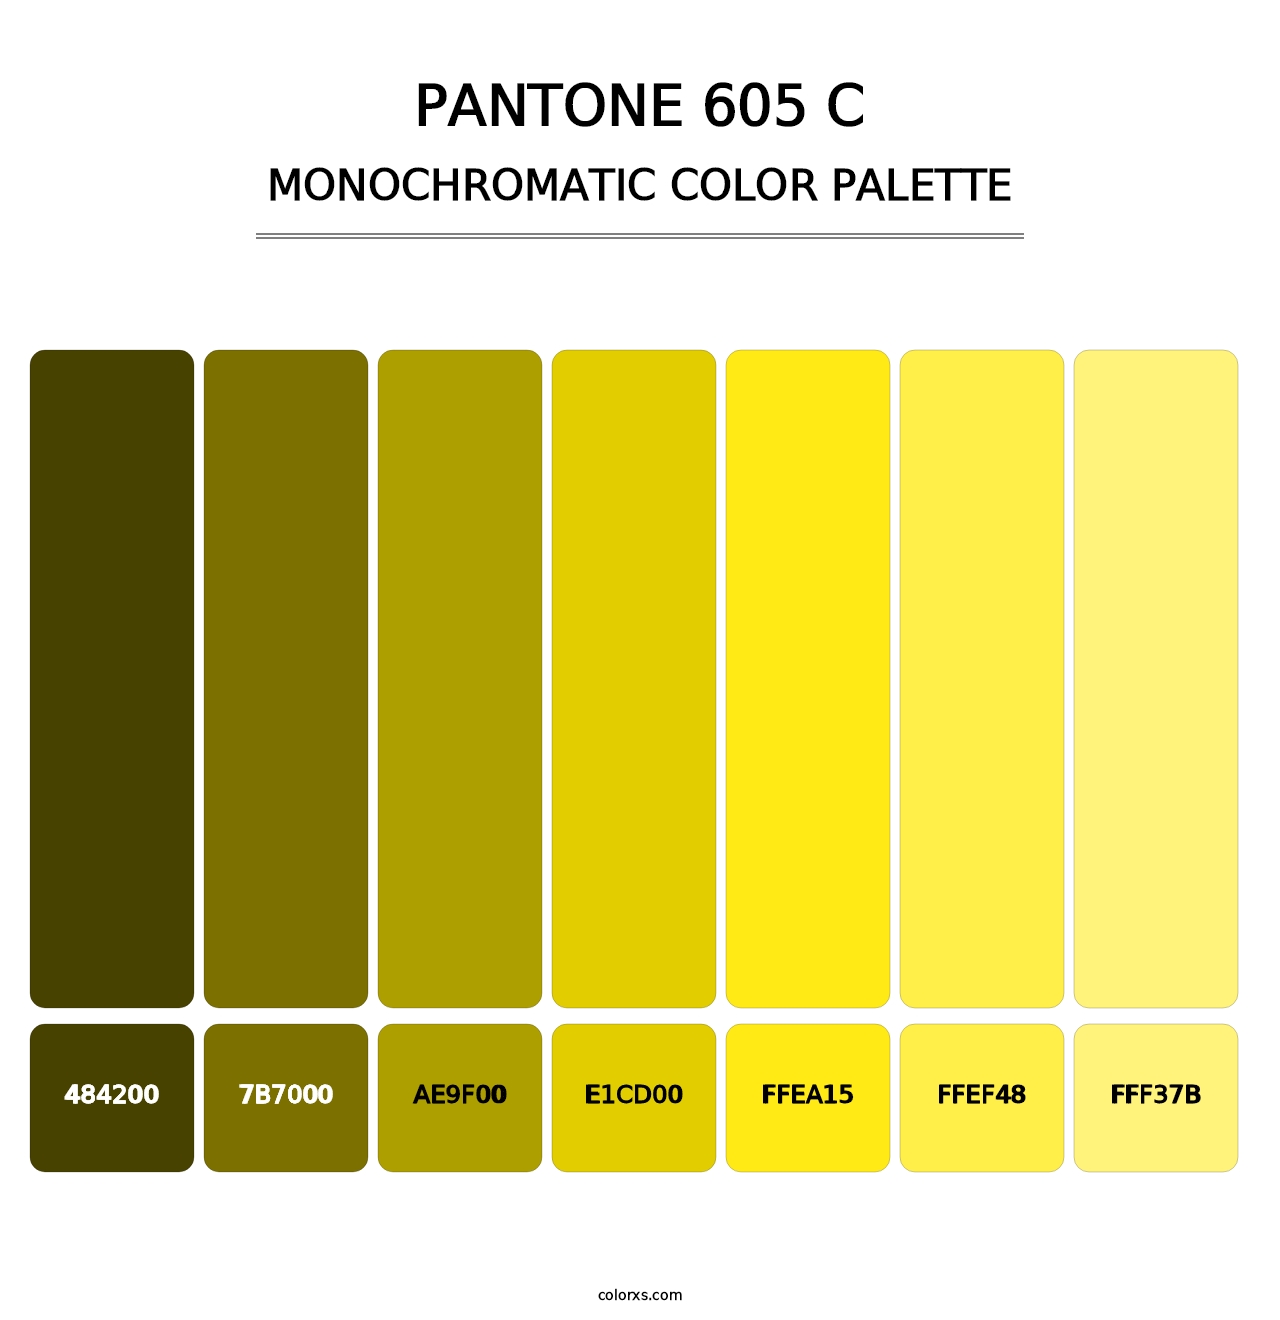 PANTONE 605 C - Monochromatic Color Palette